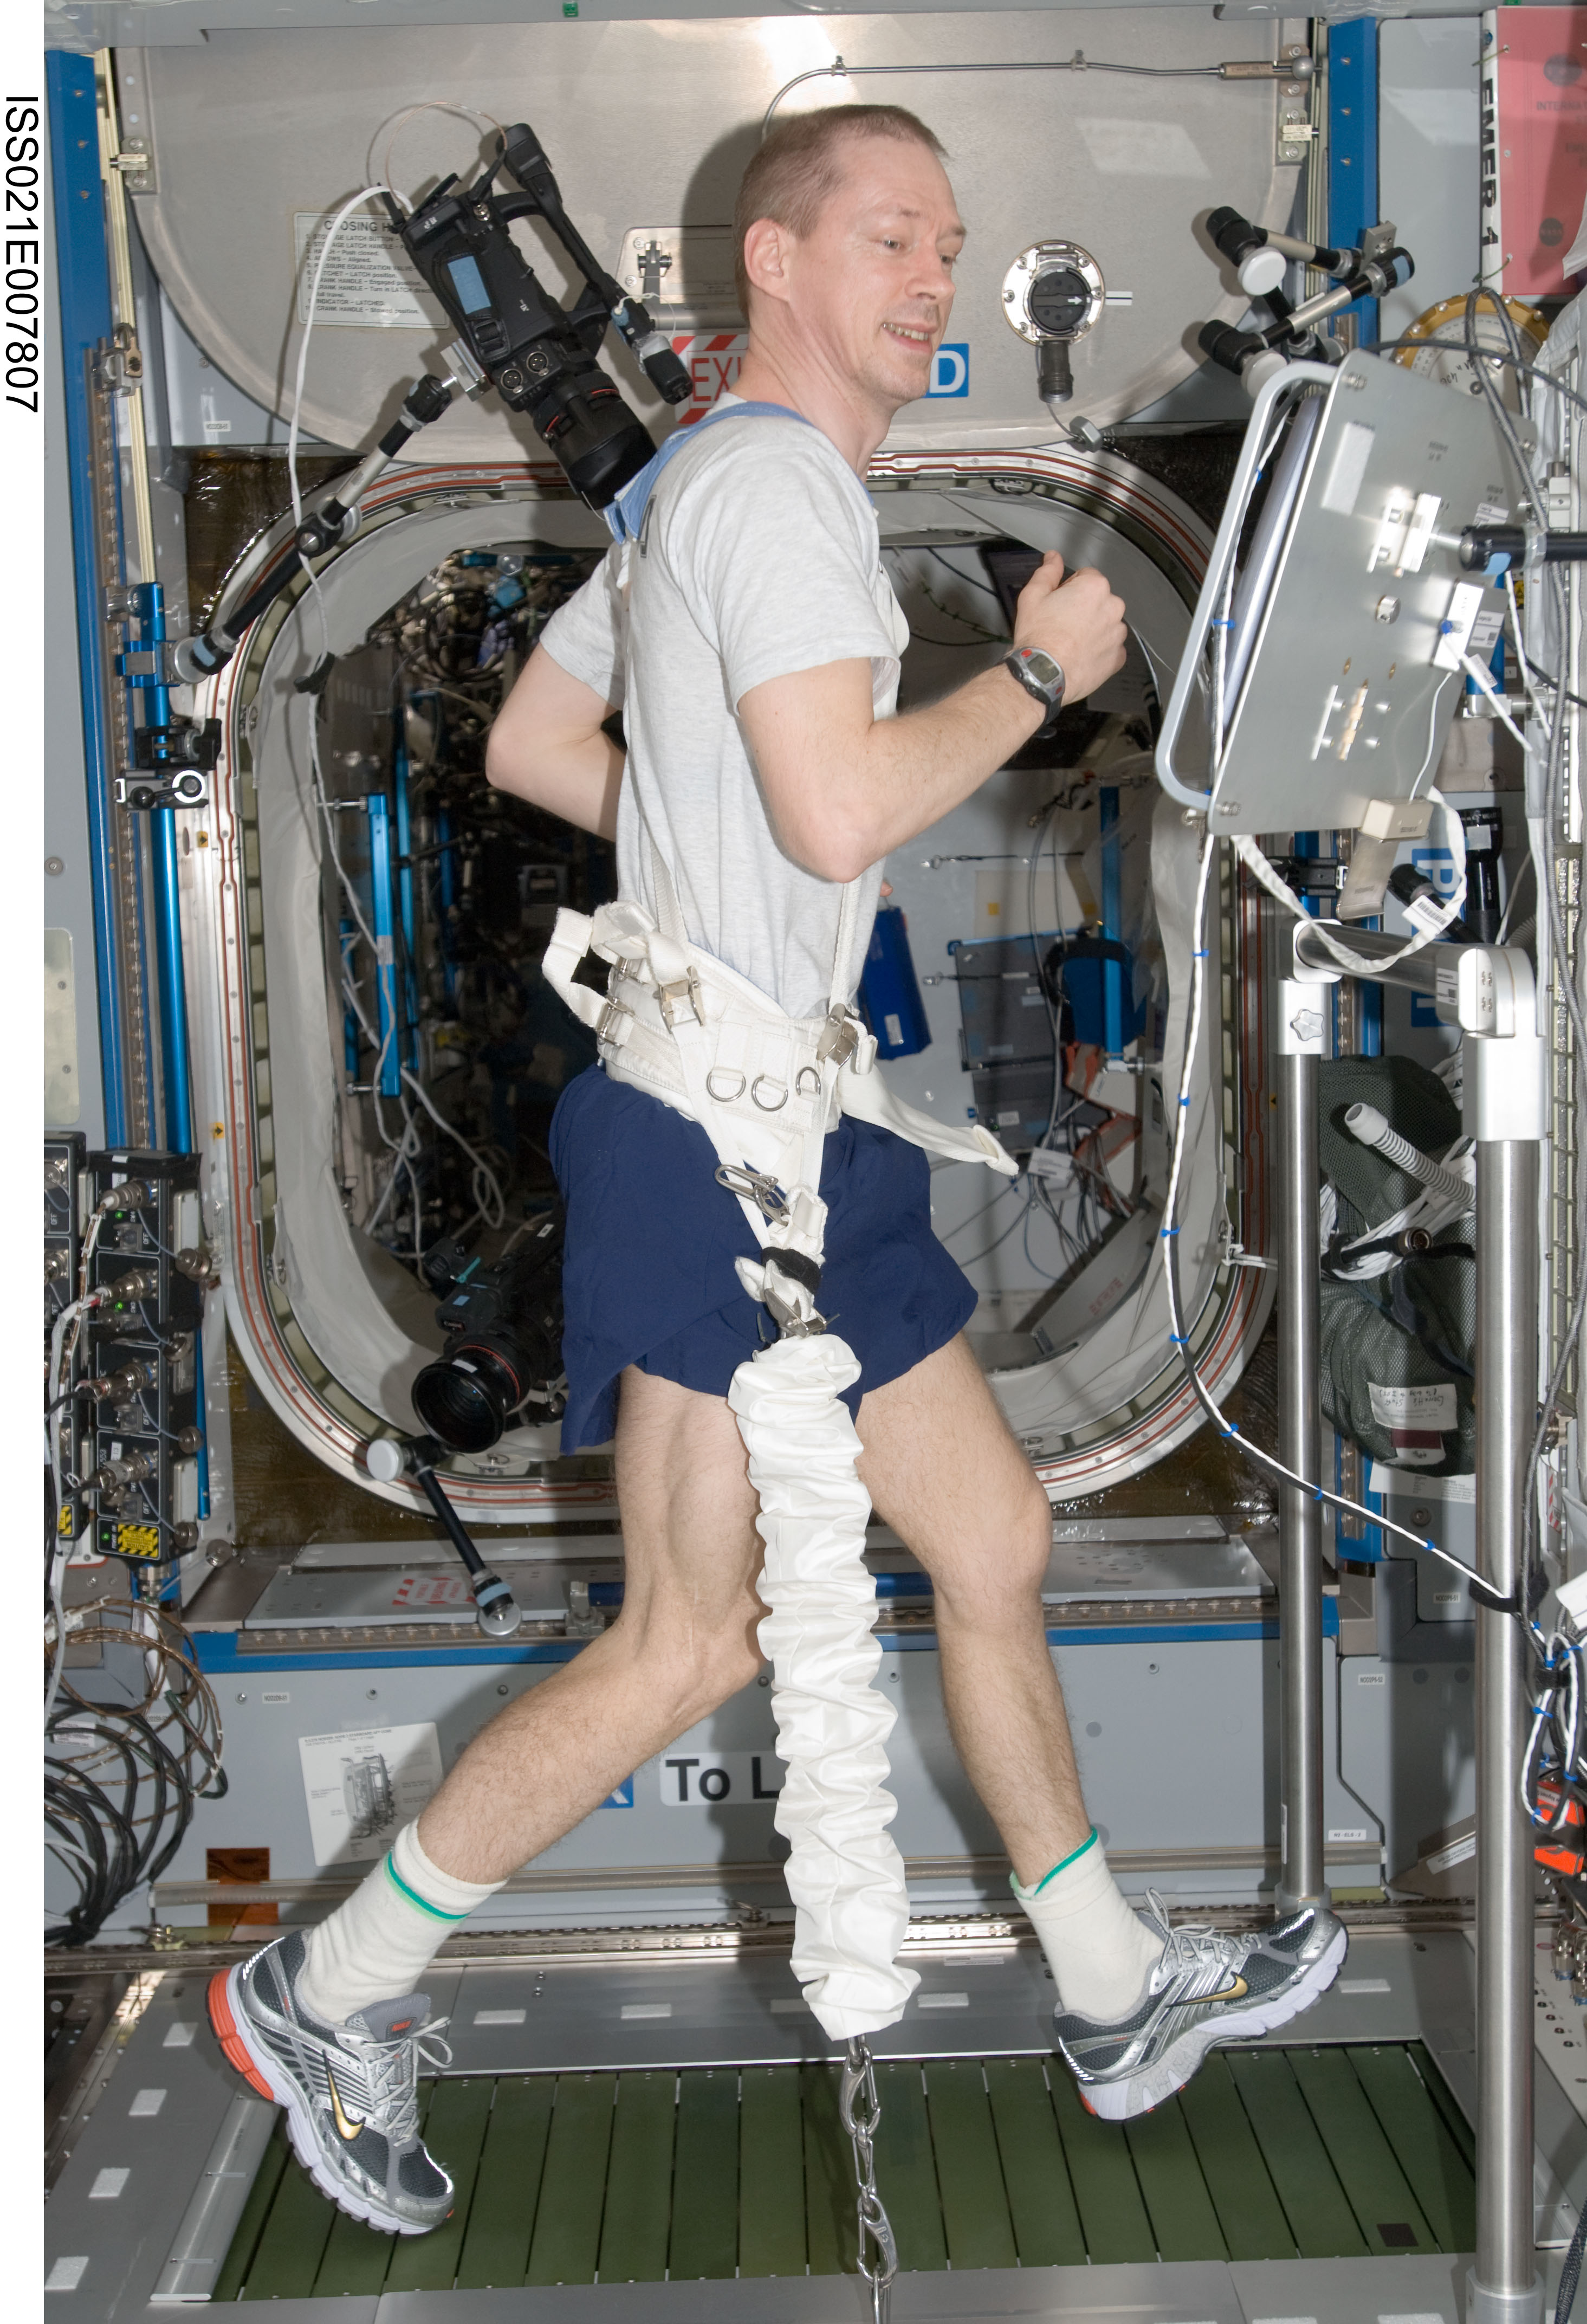 attività fisica degli astronauti a bordo bicicletta ergometrica